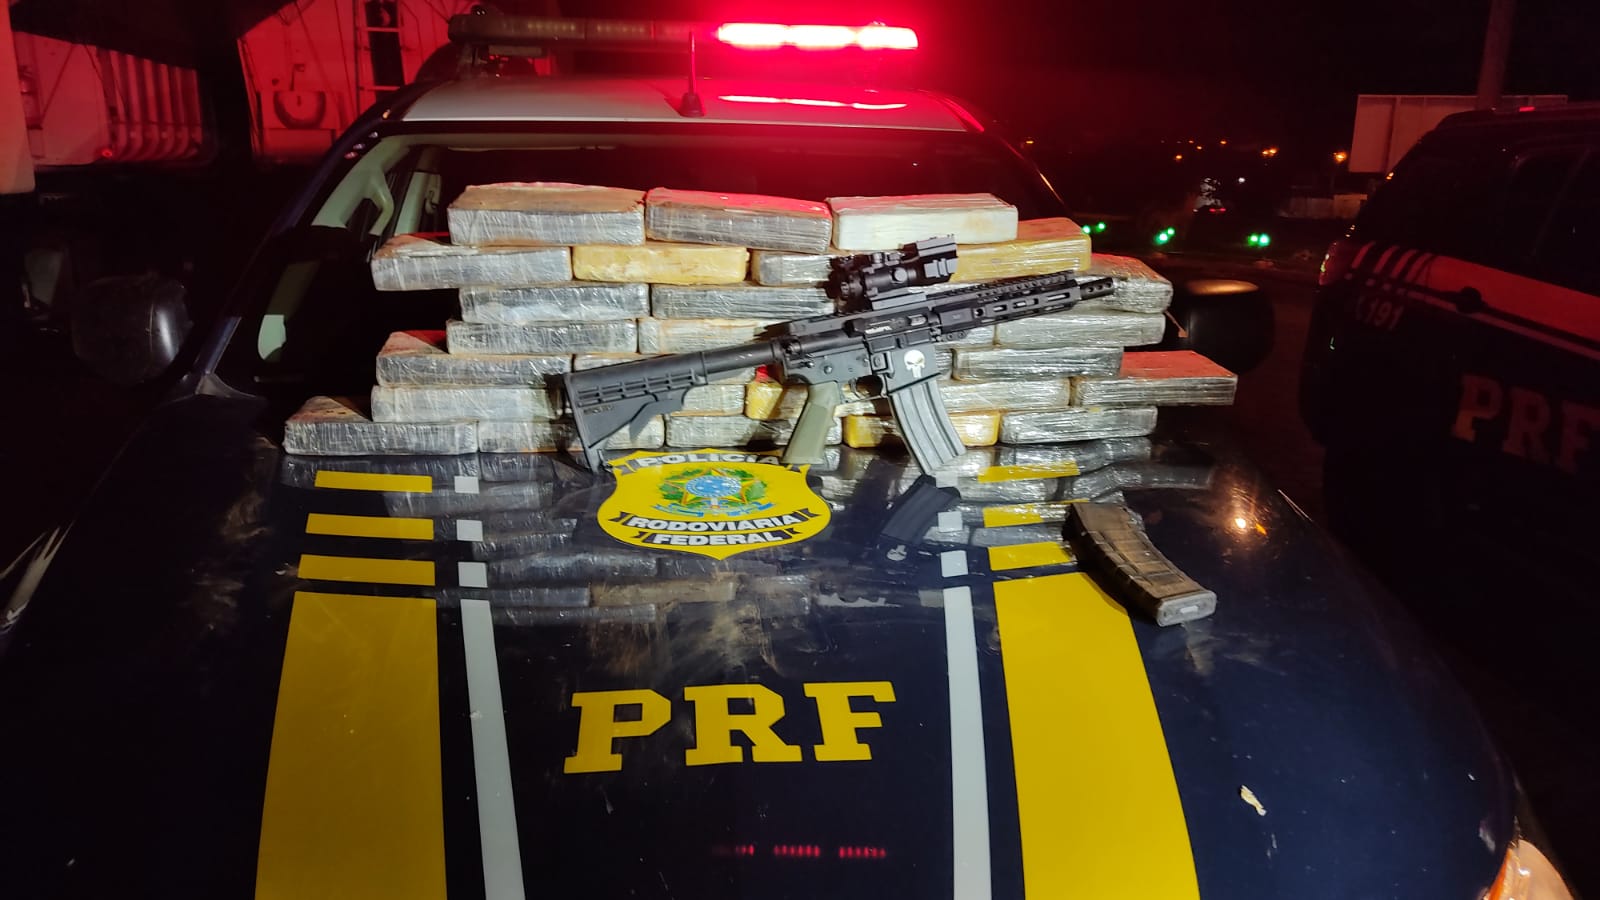 Fuzil e mais de 50 kg de cocaína são encontrados em fundo falso de um carro em Miranorte